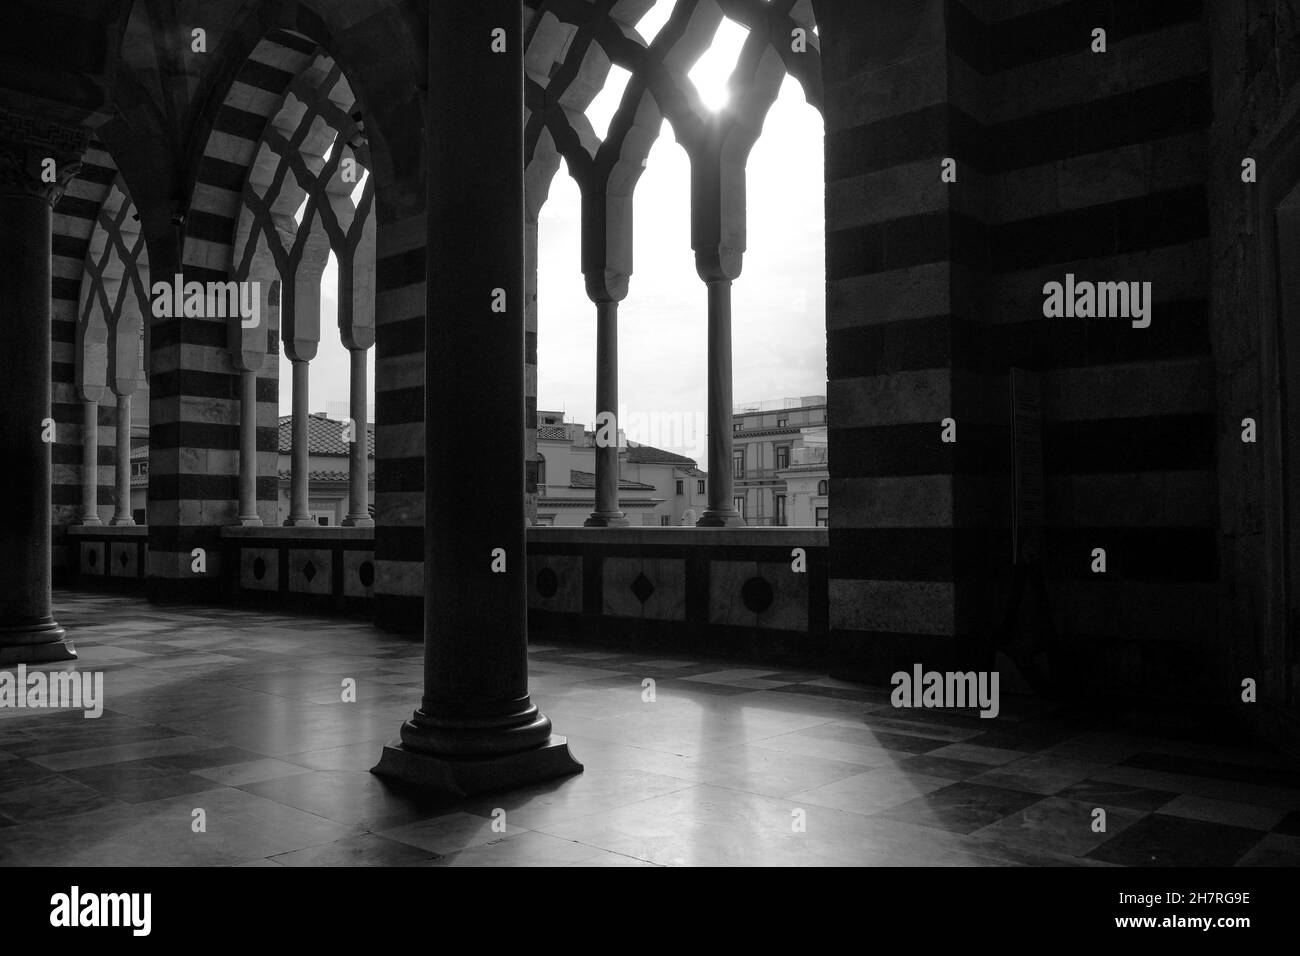 Amalfi duomo catholic Black and White Stock Photos & Images - Alamy